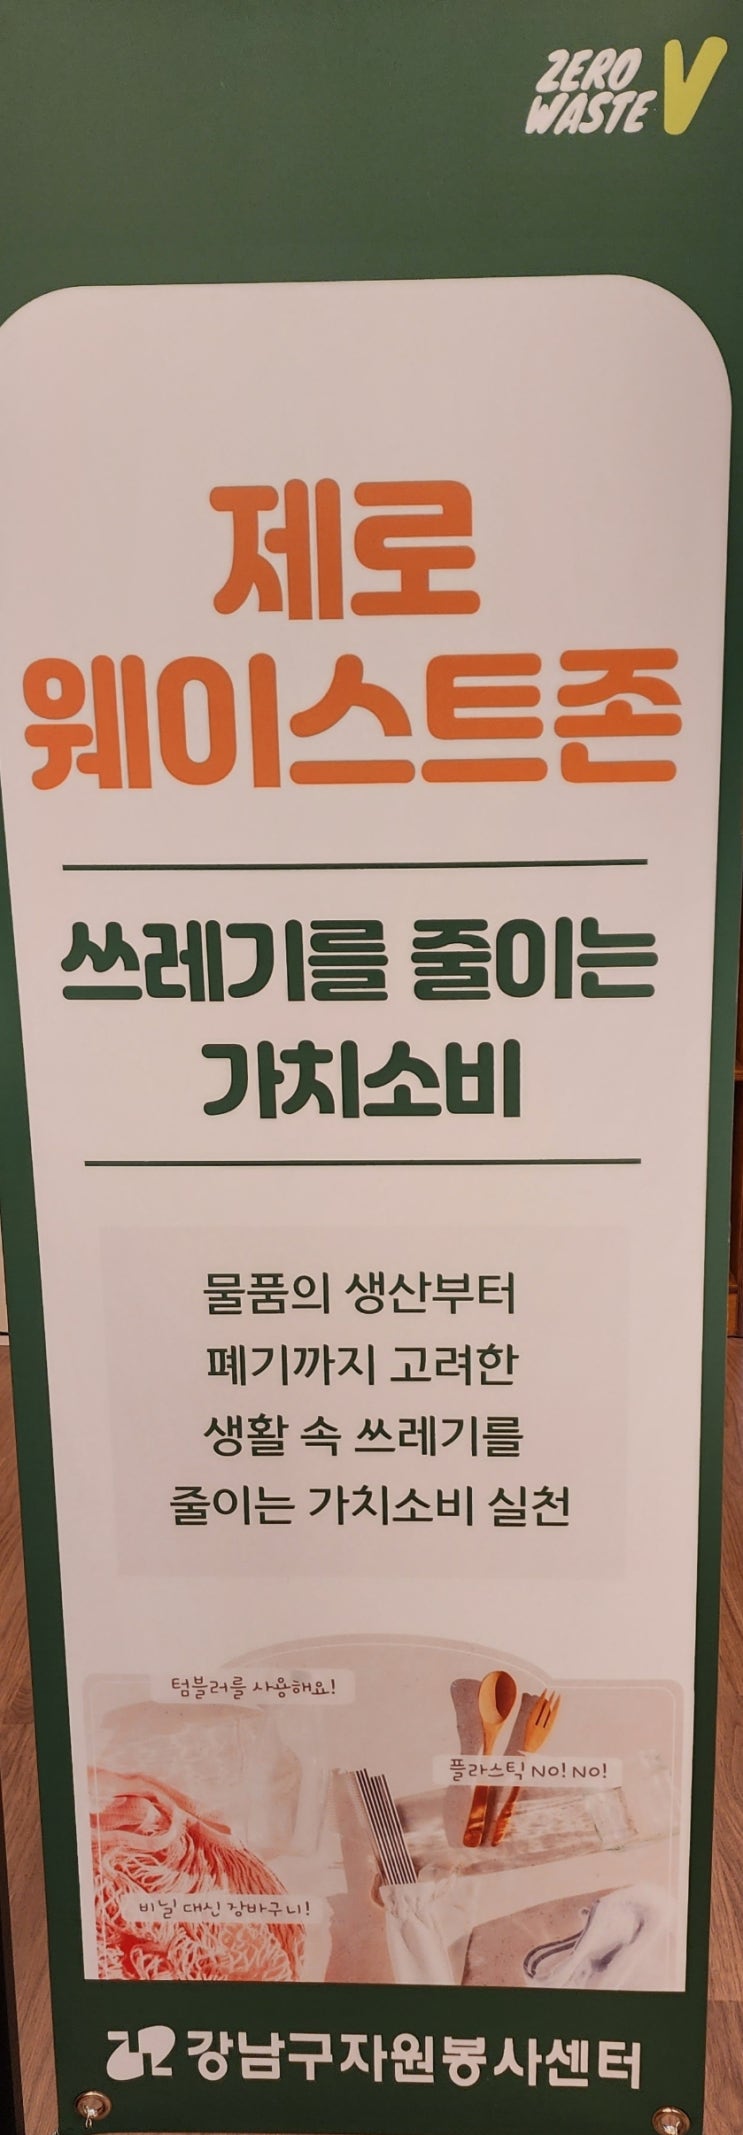 강남구자원봉사센터&공감리스트